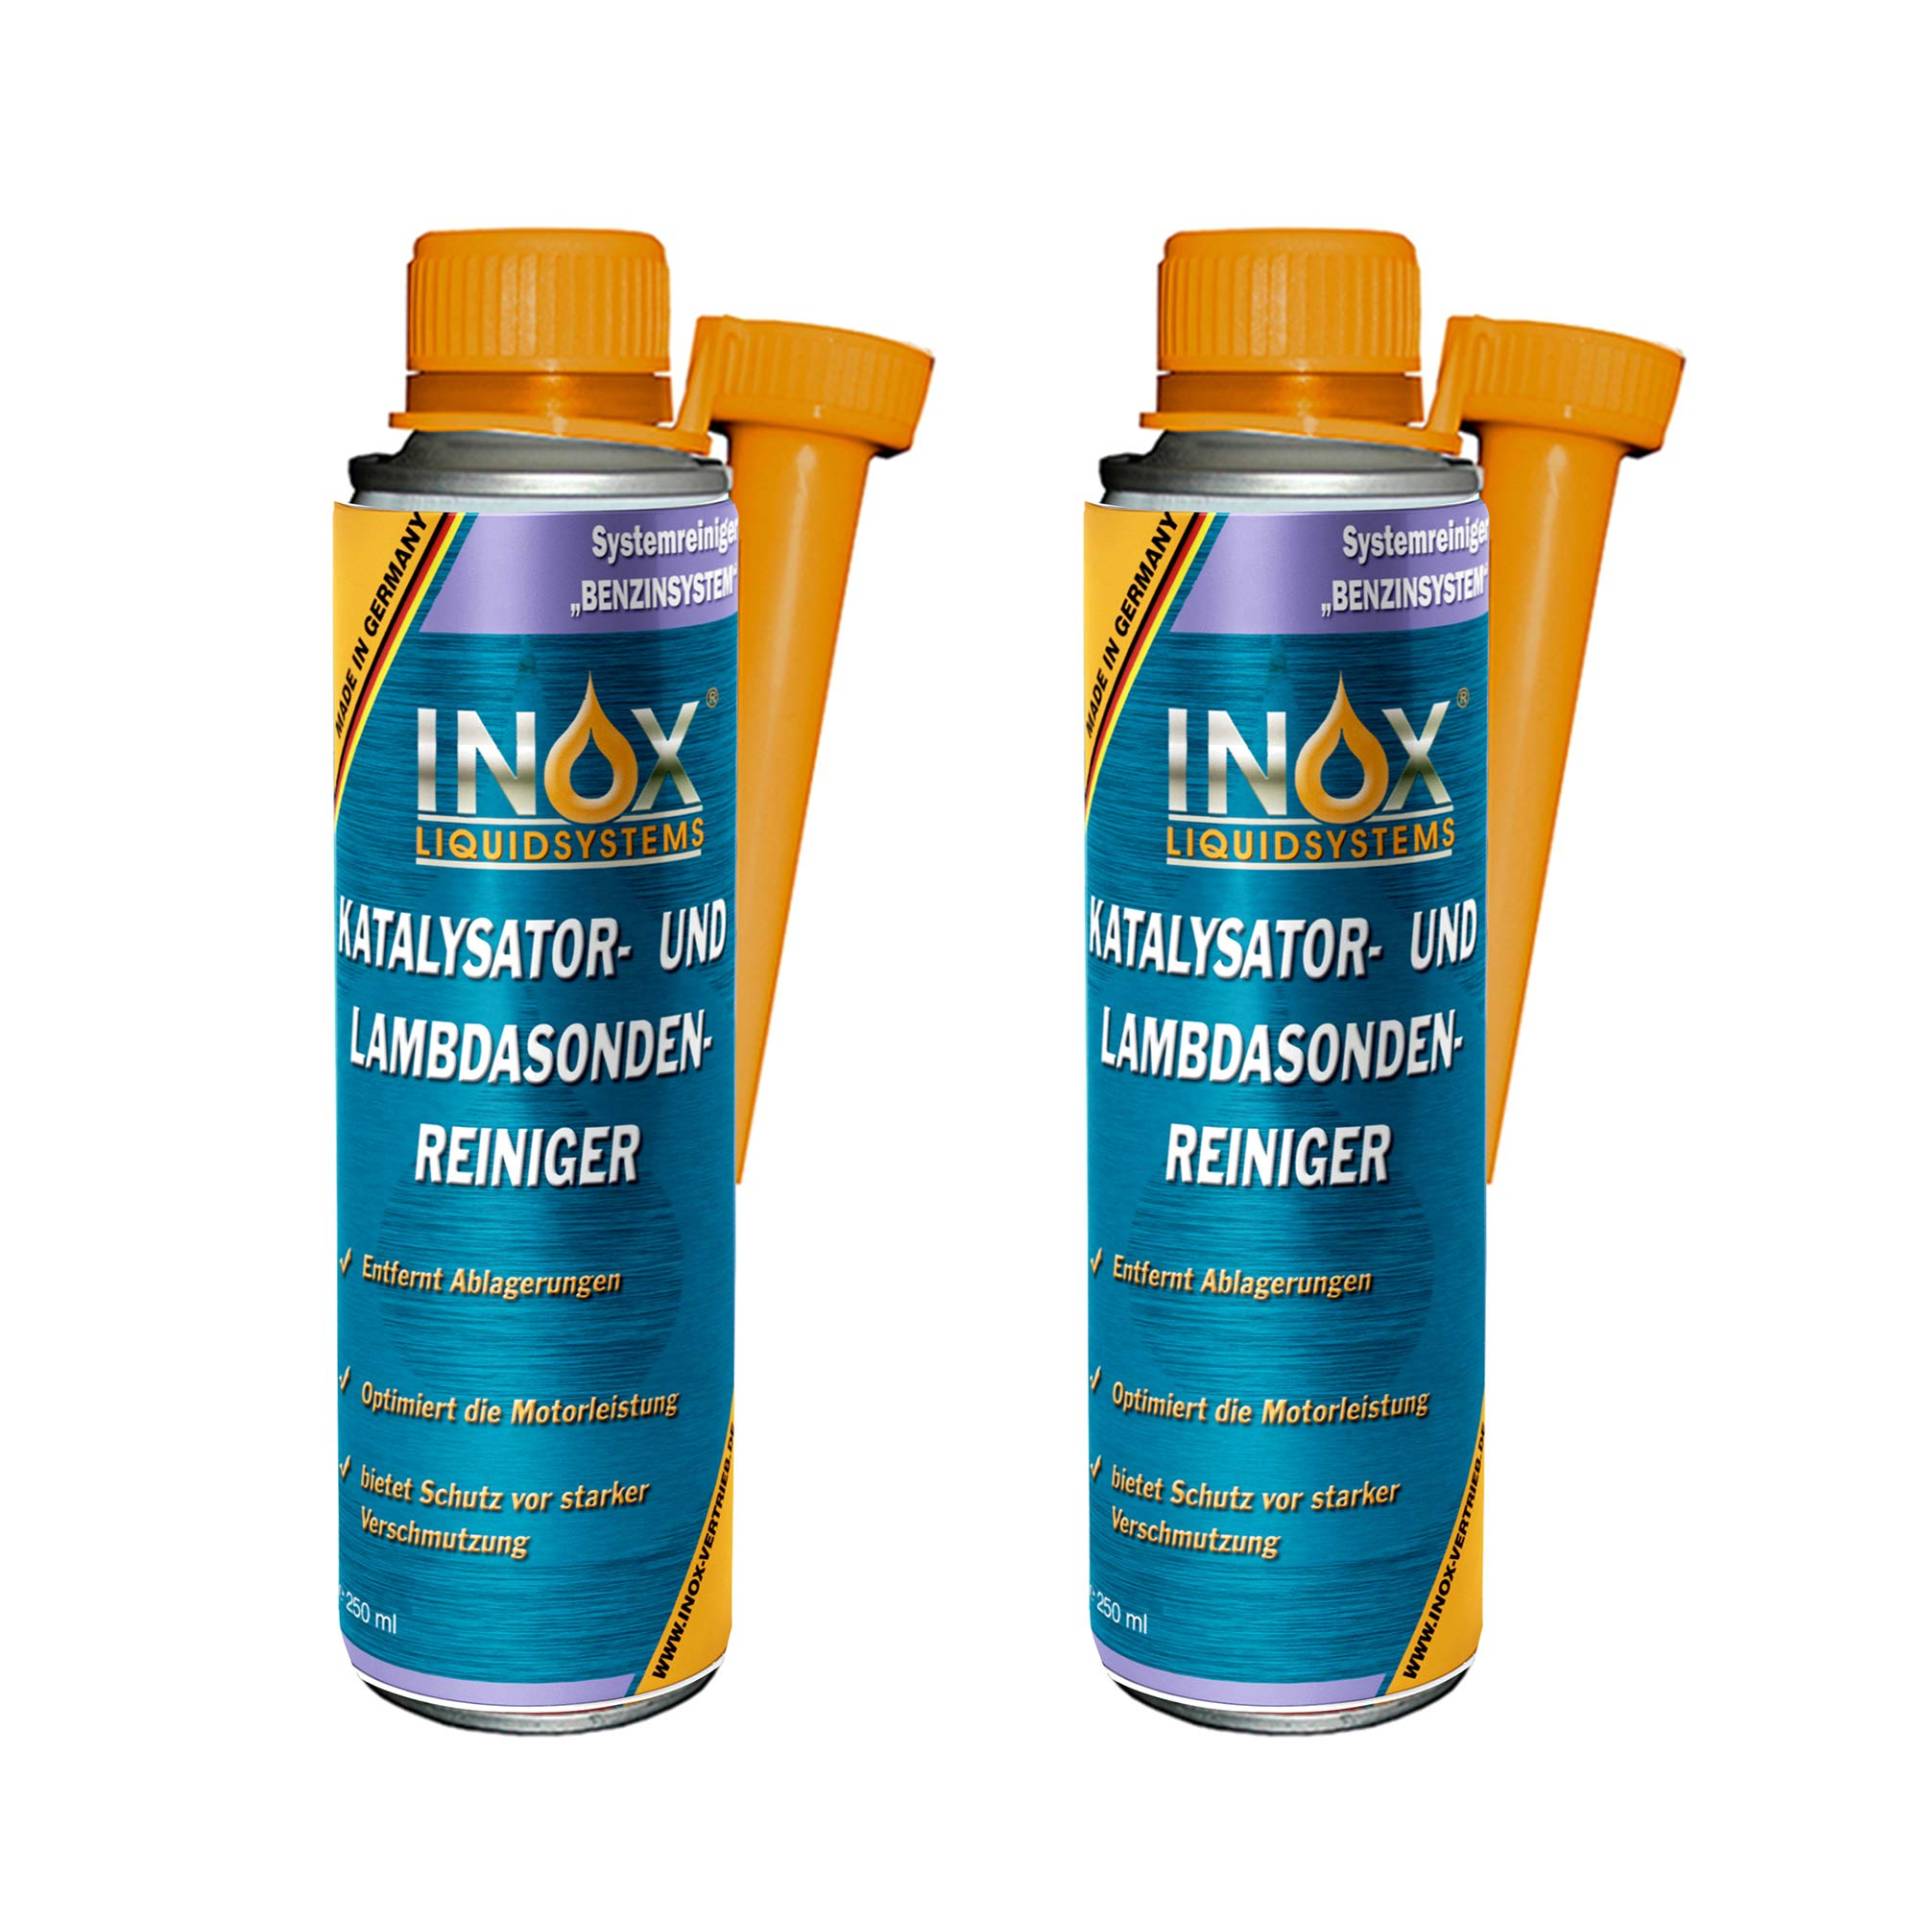 INOX® Katalysator- und Lambdasondenreiniger, 2 x 250 ml von INOX-LIQUIDSYSTEMS